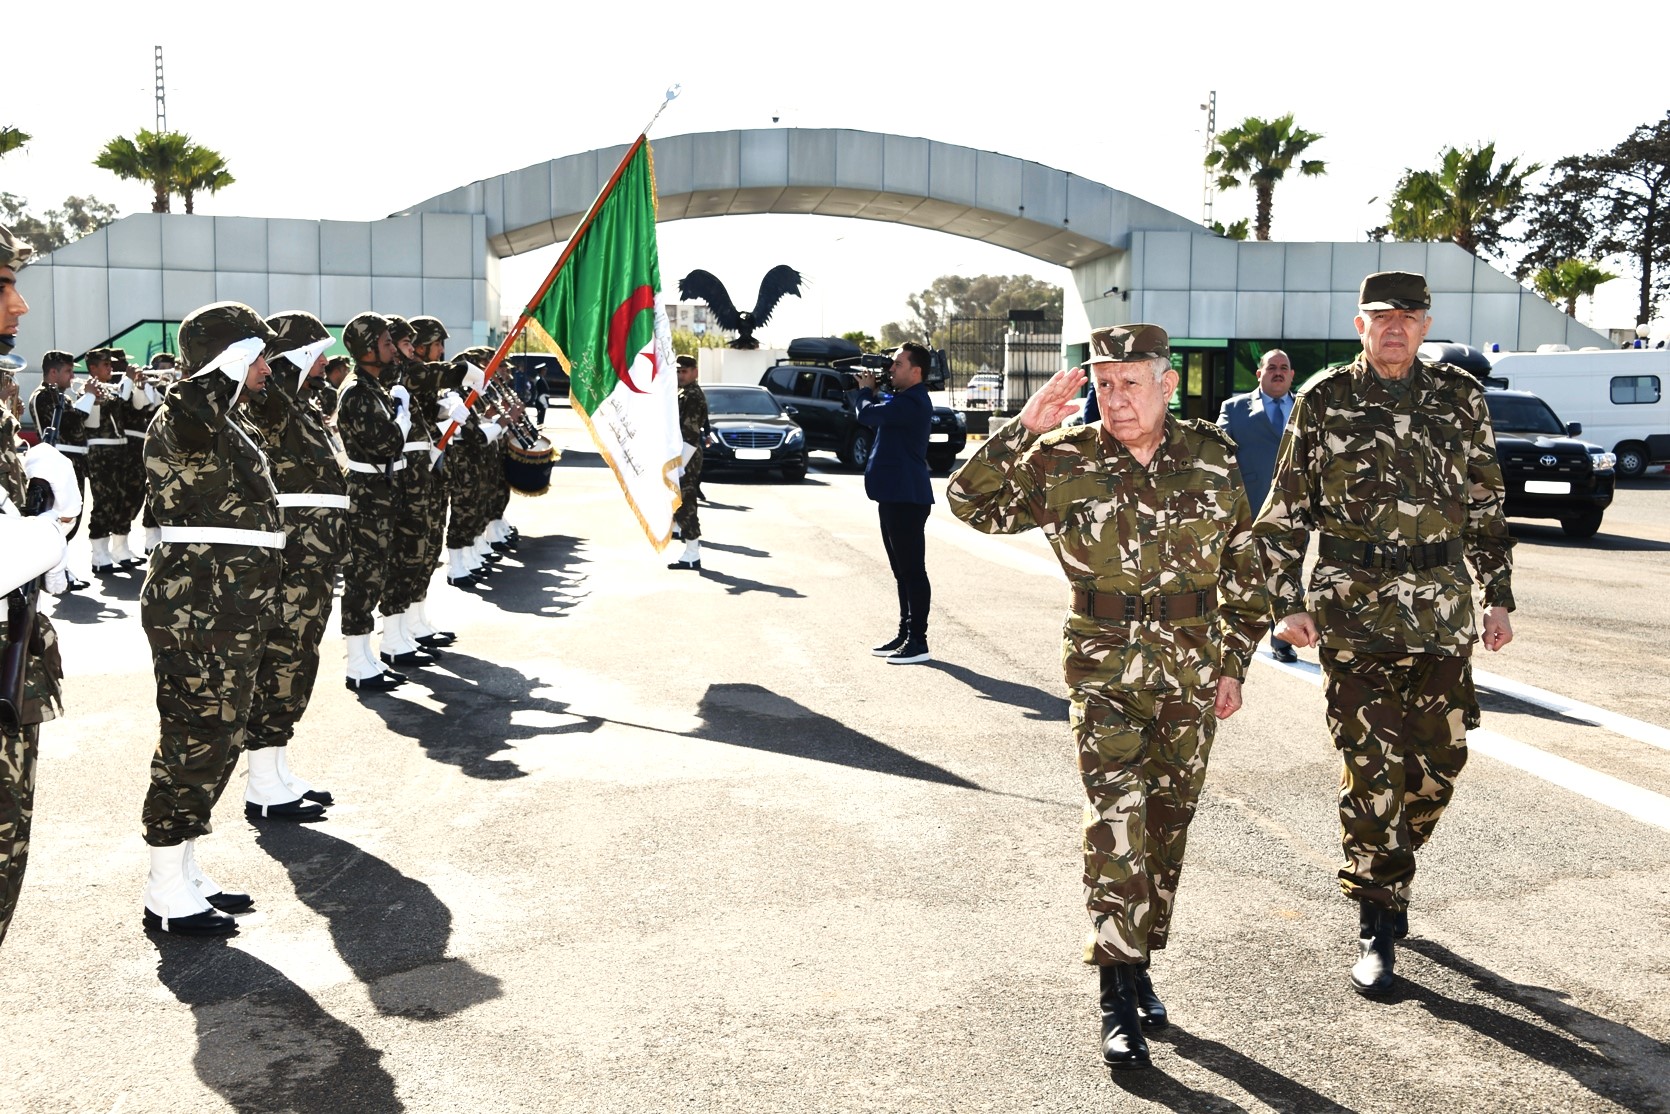 سعيد شنقريحة الفريق أول للجيش الجزائري يؤكد على مركزية الفرد و عالمية الرهان لدى الجيش الجزائري